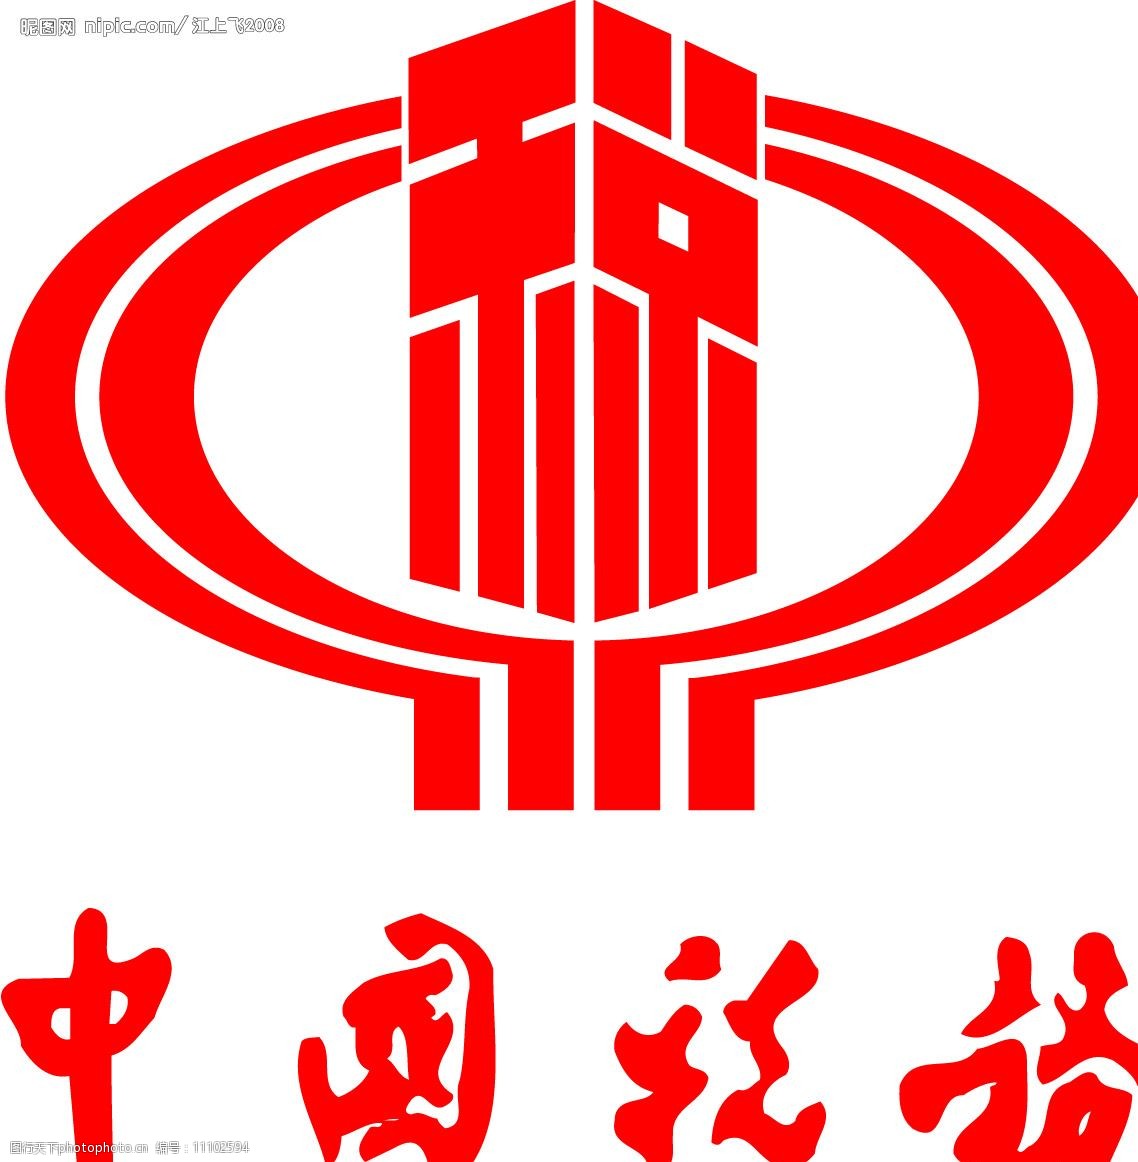 关键词:中国税务标志 税务 标志 标识标志图标 企业logo标志 矢量图库